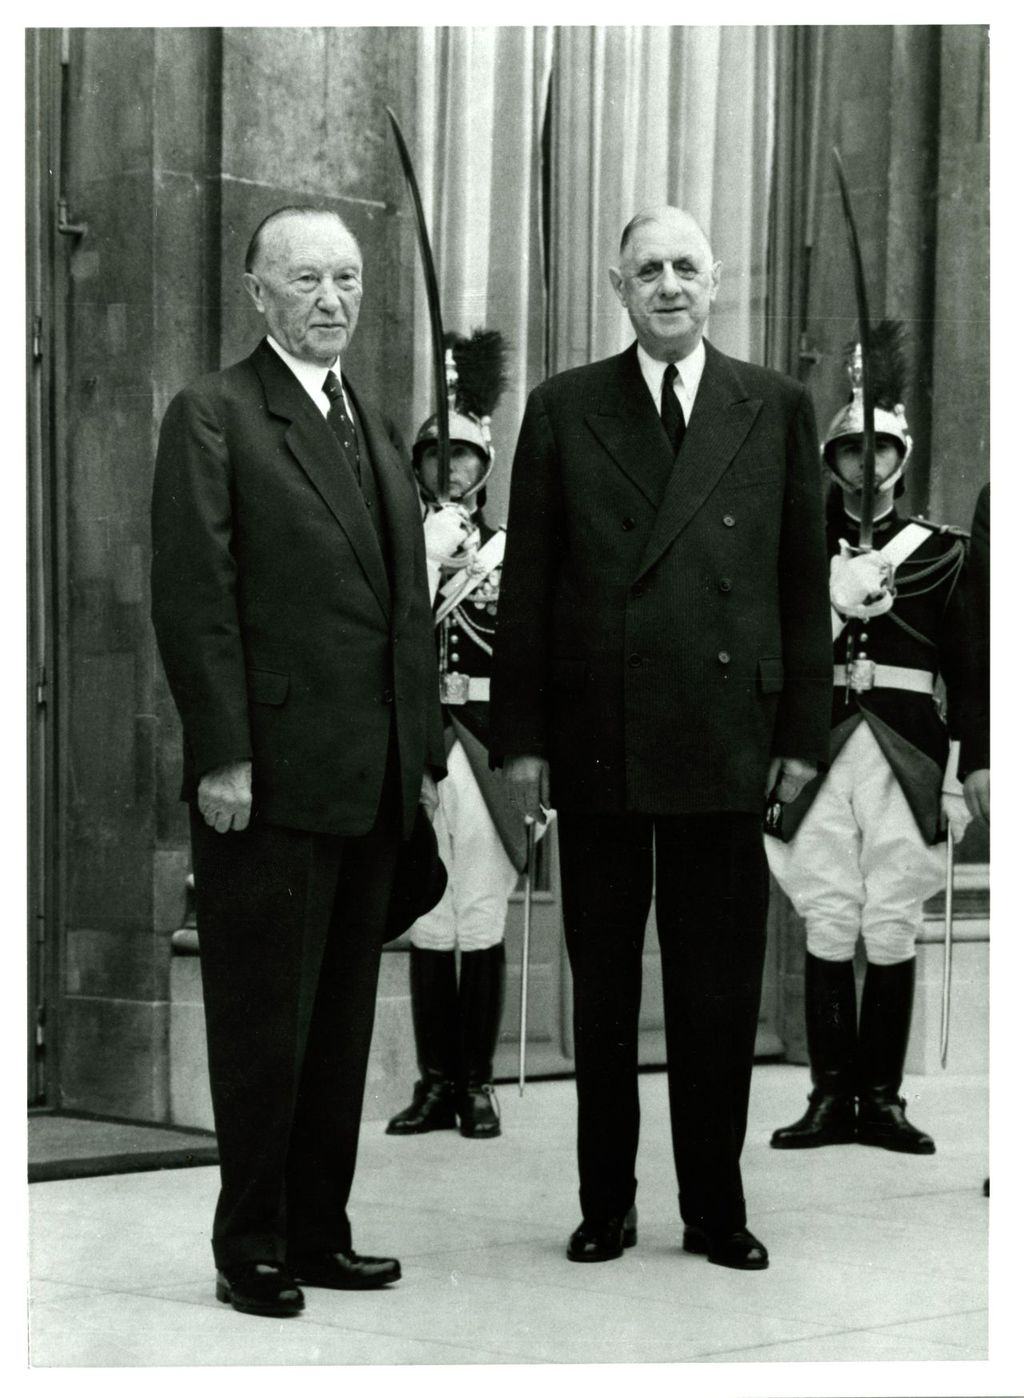 Foto: Staatsbesuch des Bundeskanzlers Adenauer in Paris, Juli 1962